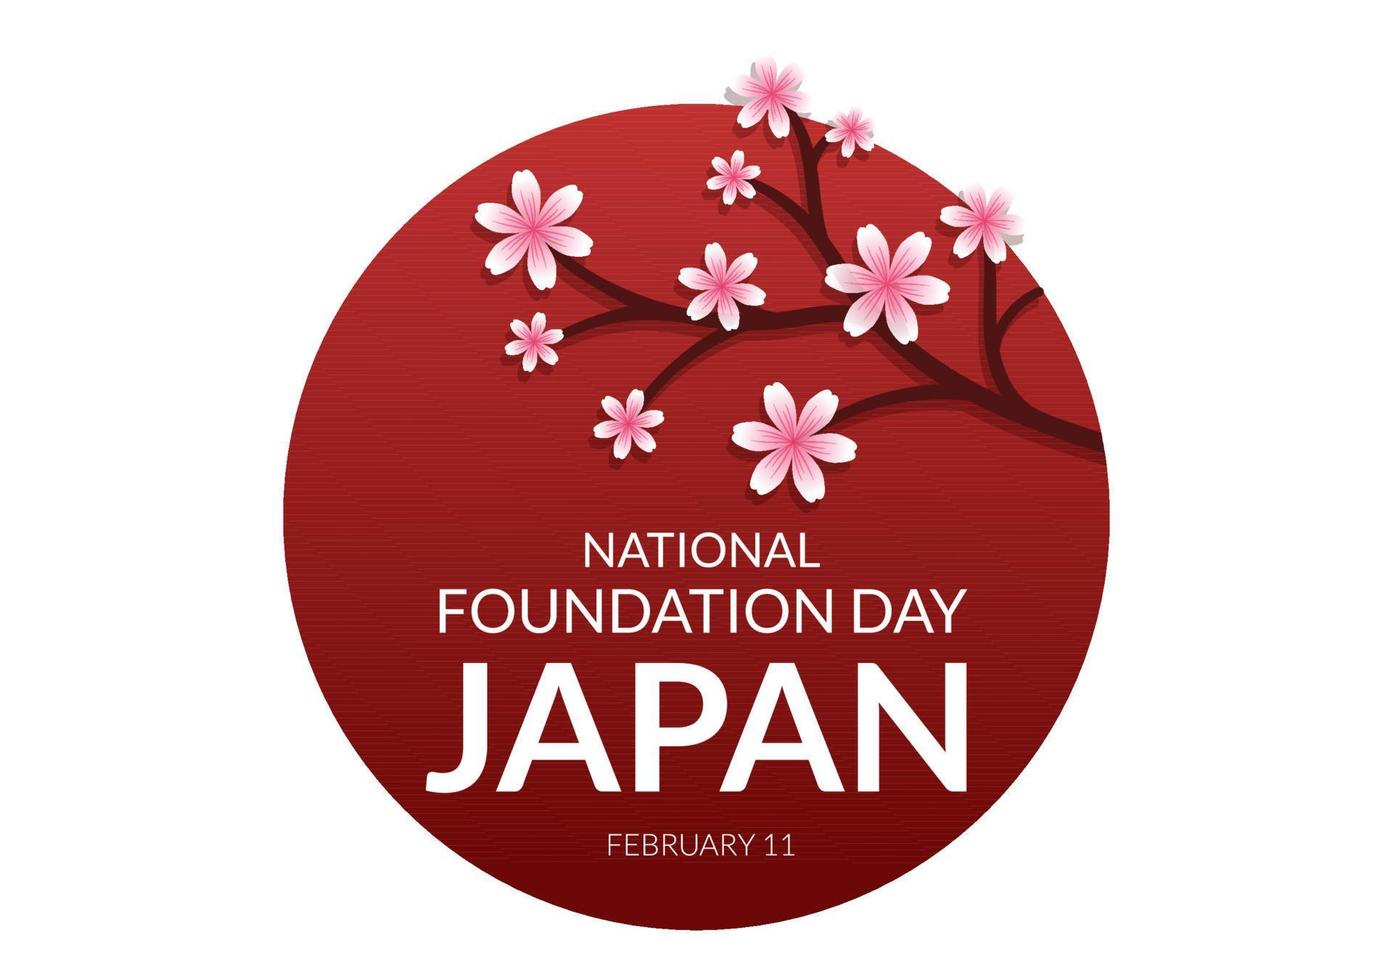 feliz día de la fundación nacional de japón el 11 de febrero con famosos monumentos japoneses y bandera en estilo plano ilustración de plantillas dibujadas a mano de dibujos animados vector